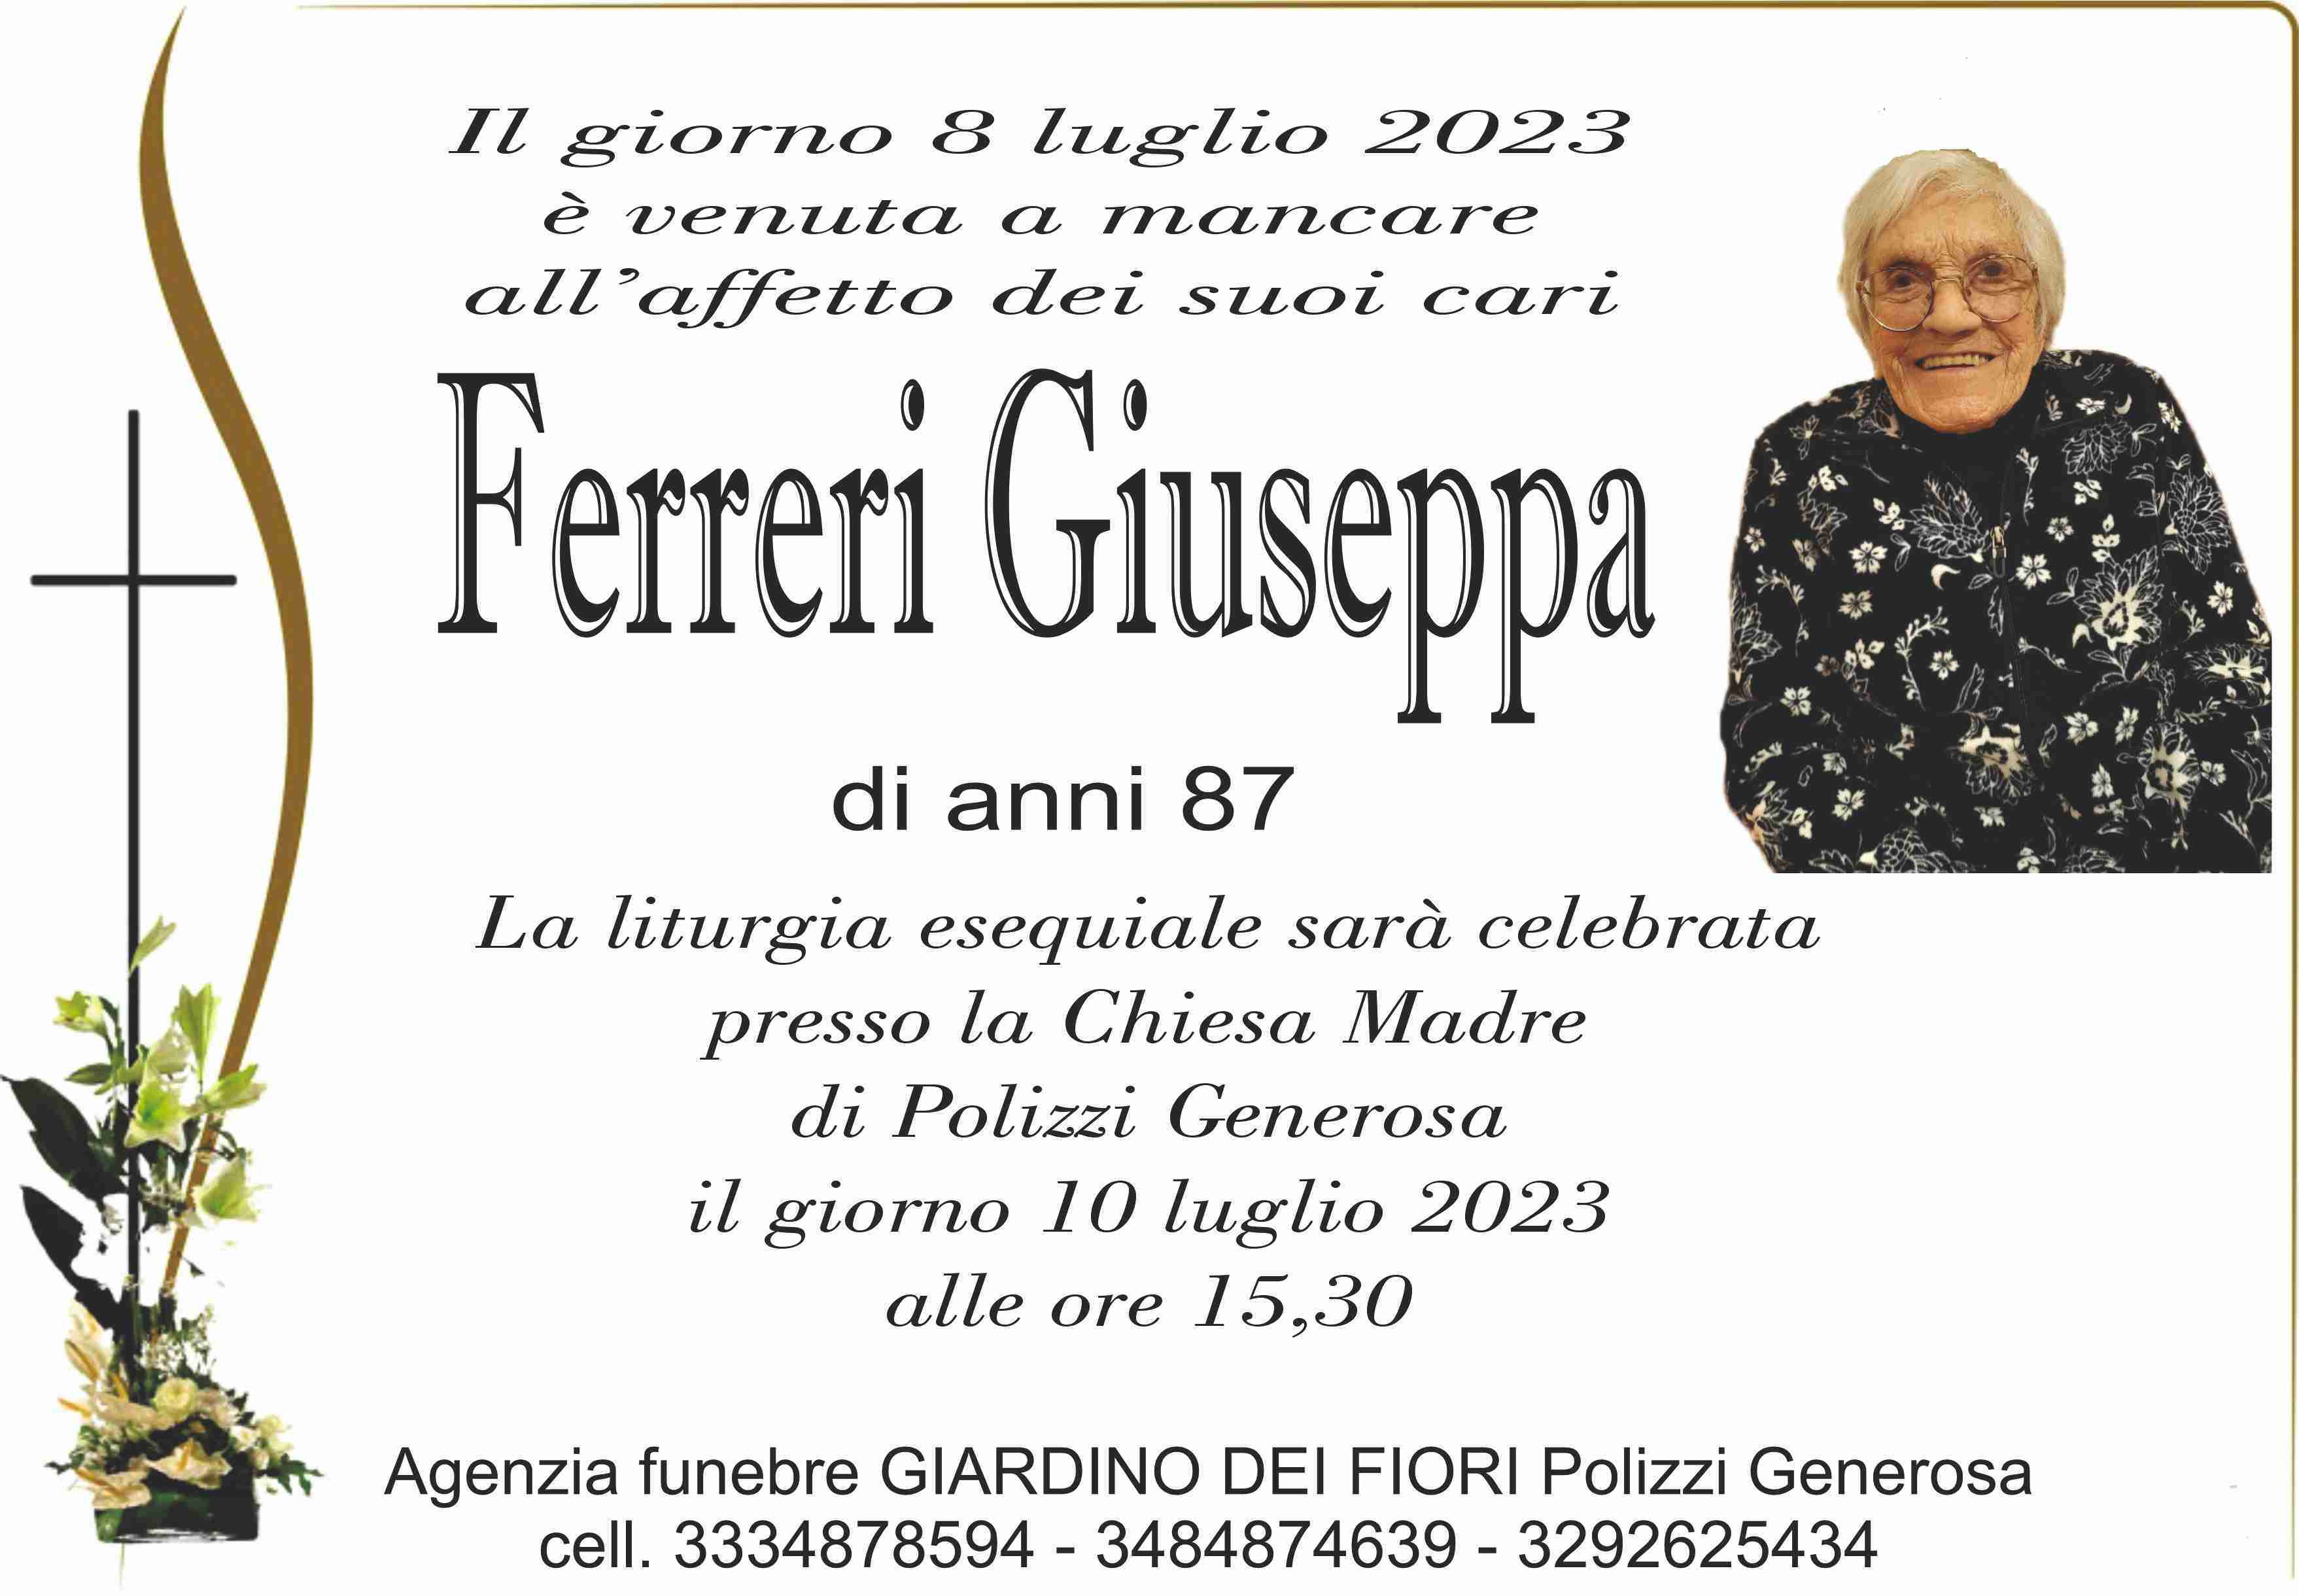 Giuseppa Ferreri